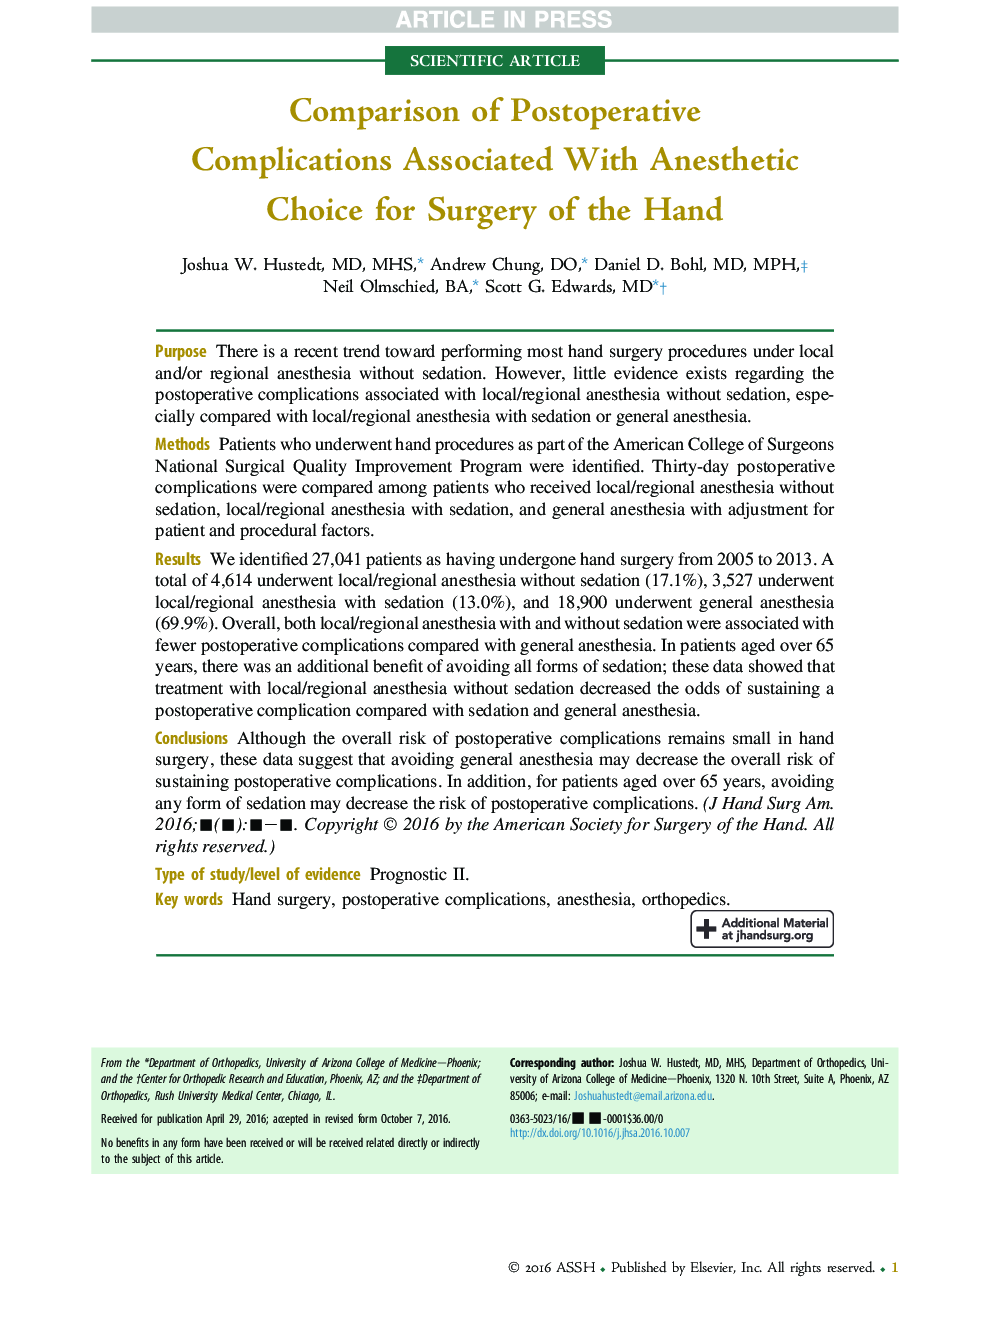 مقایسه عوارض بعد از عمل همراه با انتخاب بیهوشی برای جراحی دست 